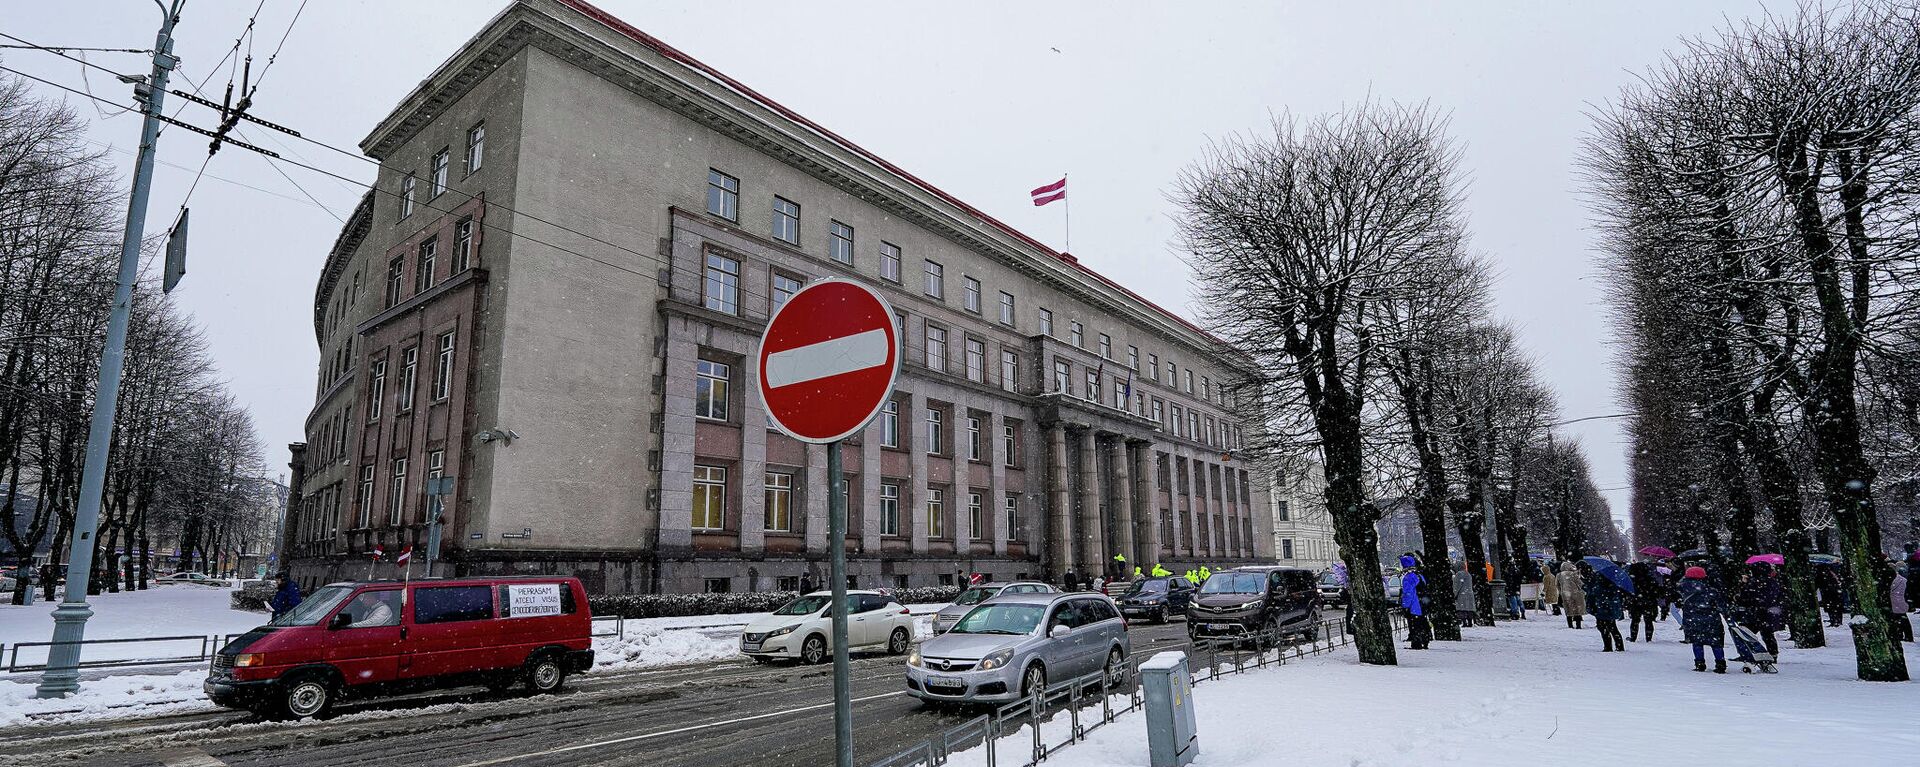 Обстановка на акции протеста против антиковидных ограничений в Риге - Sputnik Латвия, 1920, 08.02.2022